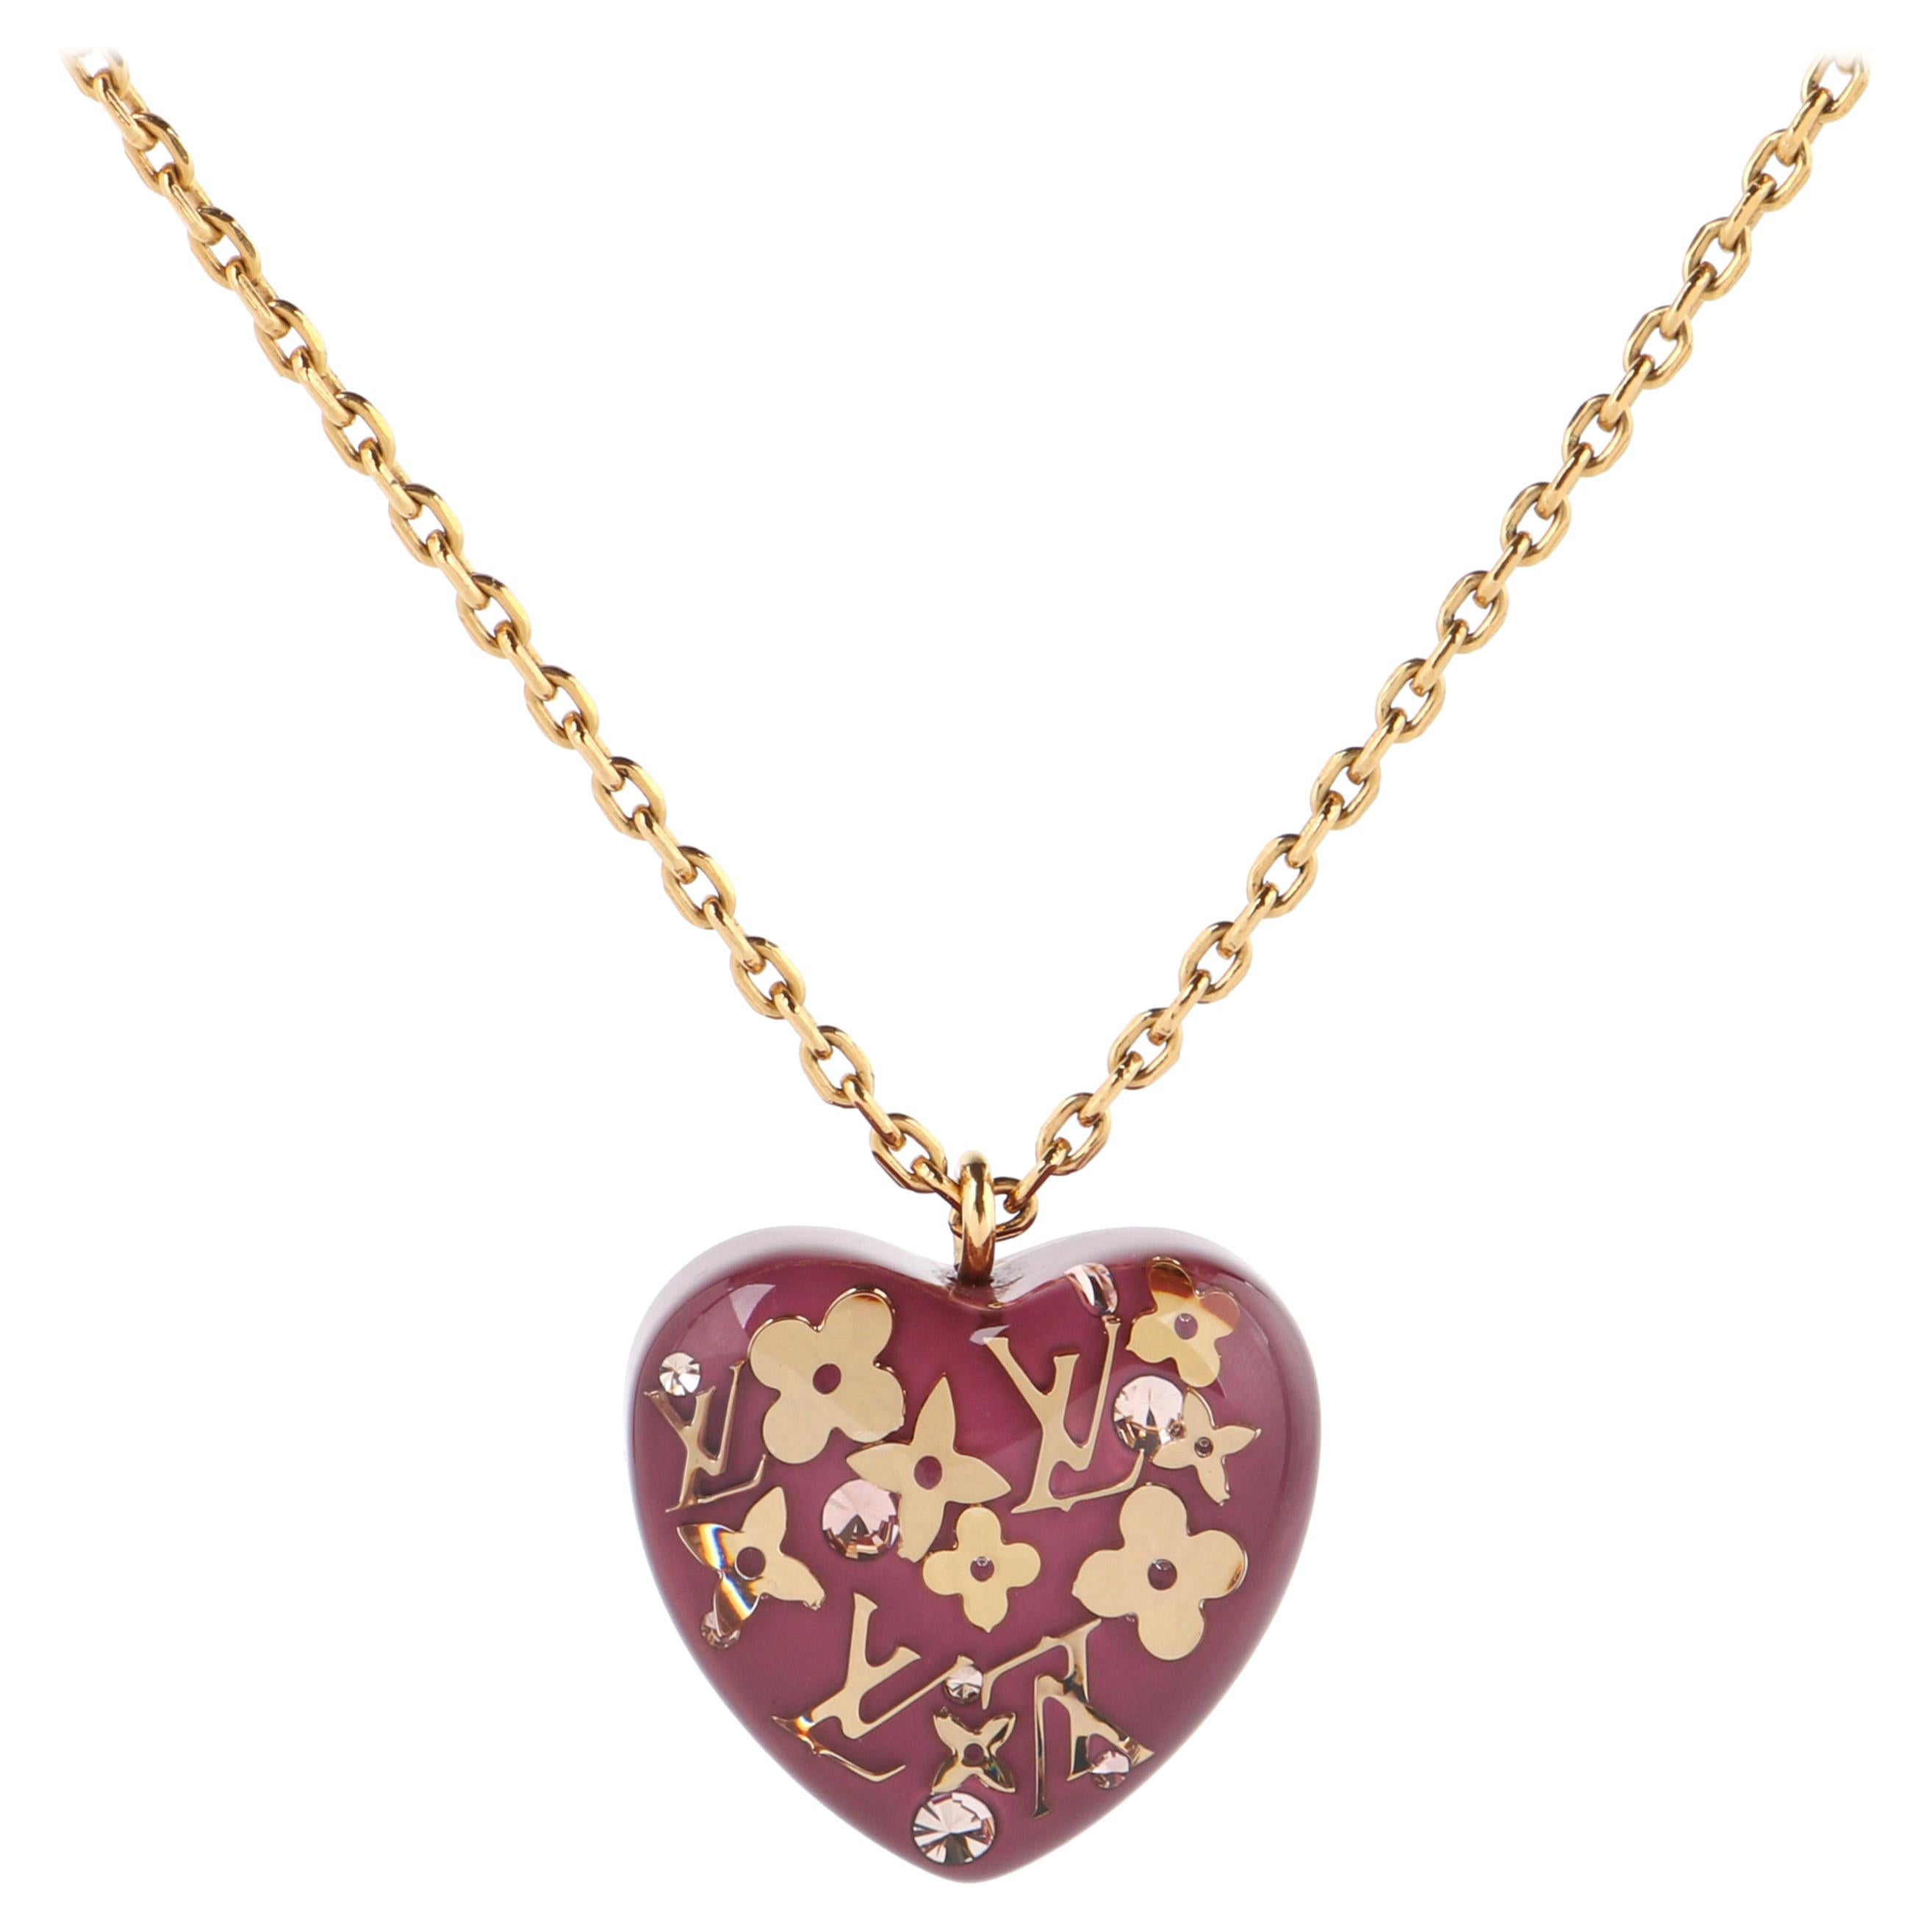 Louis Vuitton, Jewelry, Louis Vuitton Pendant Inclusion Heart  Necklacer434